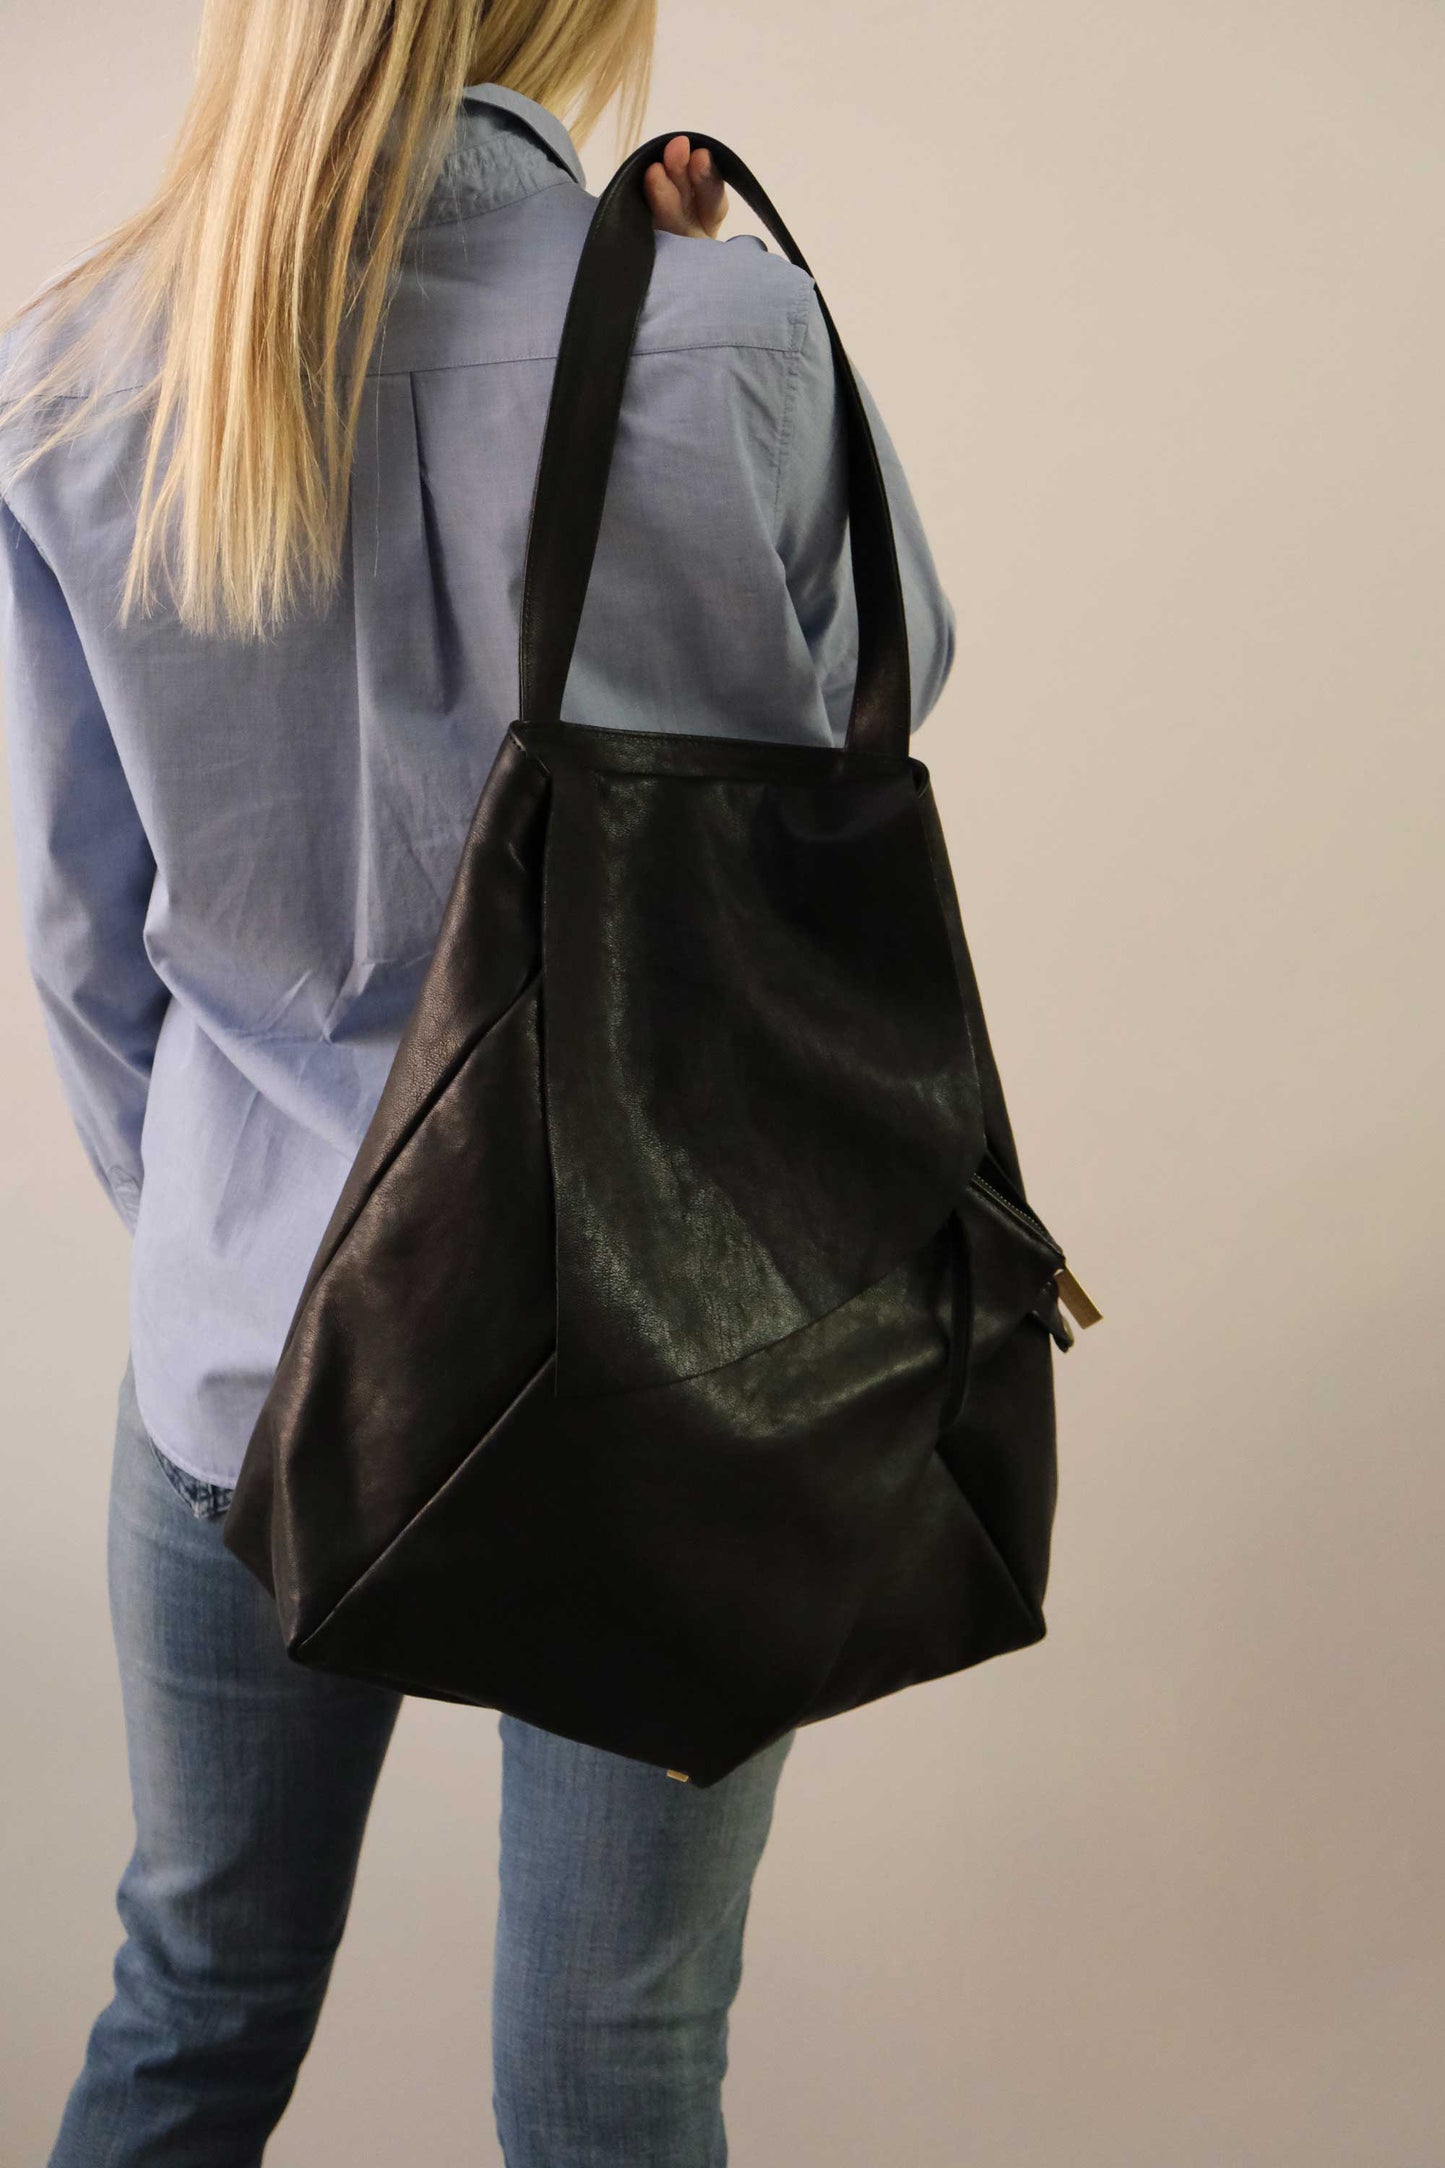 Ferdi tote bag in black nappa leather